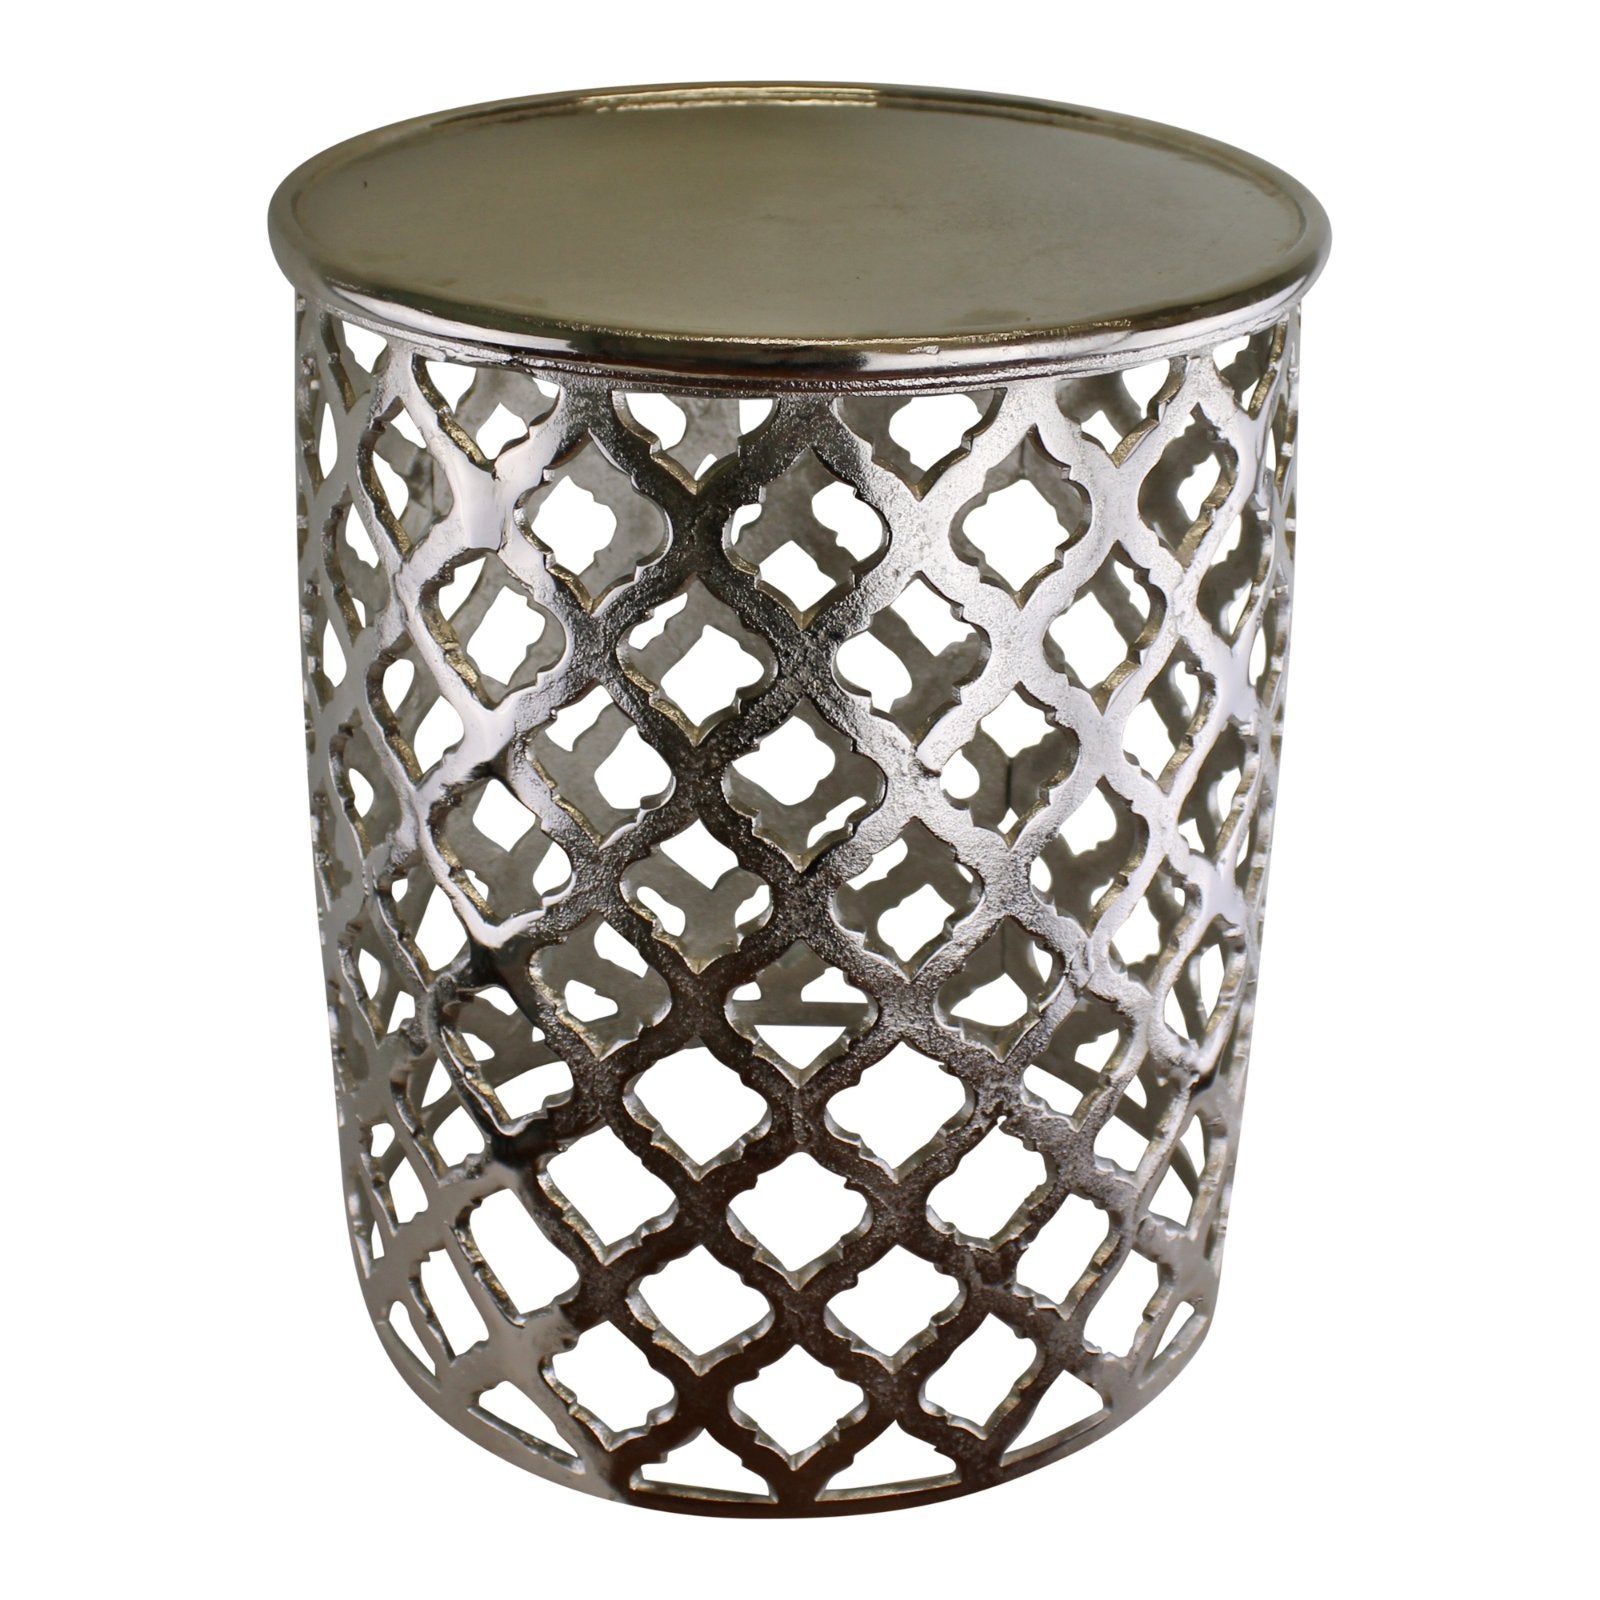 Decorative Silver Metal Side Table, Lattice design